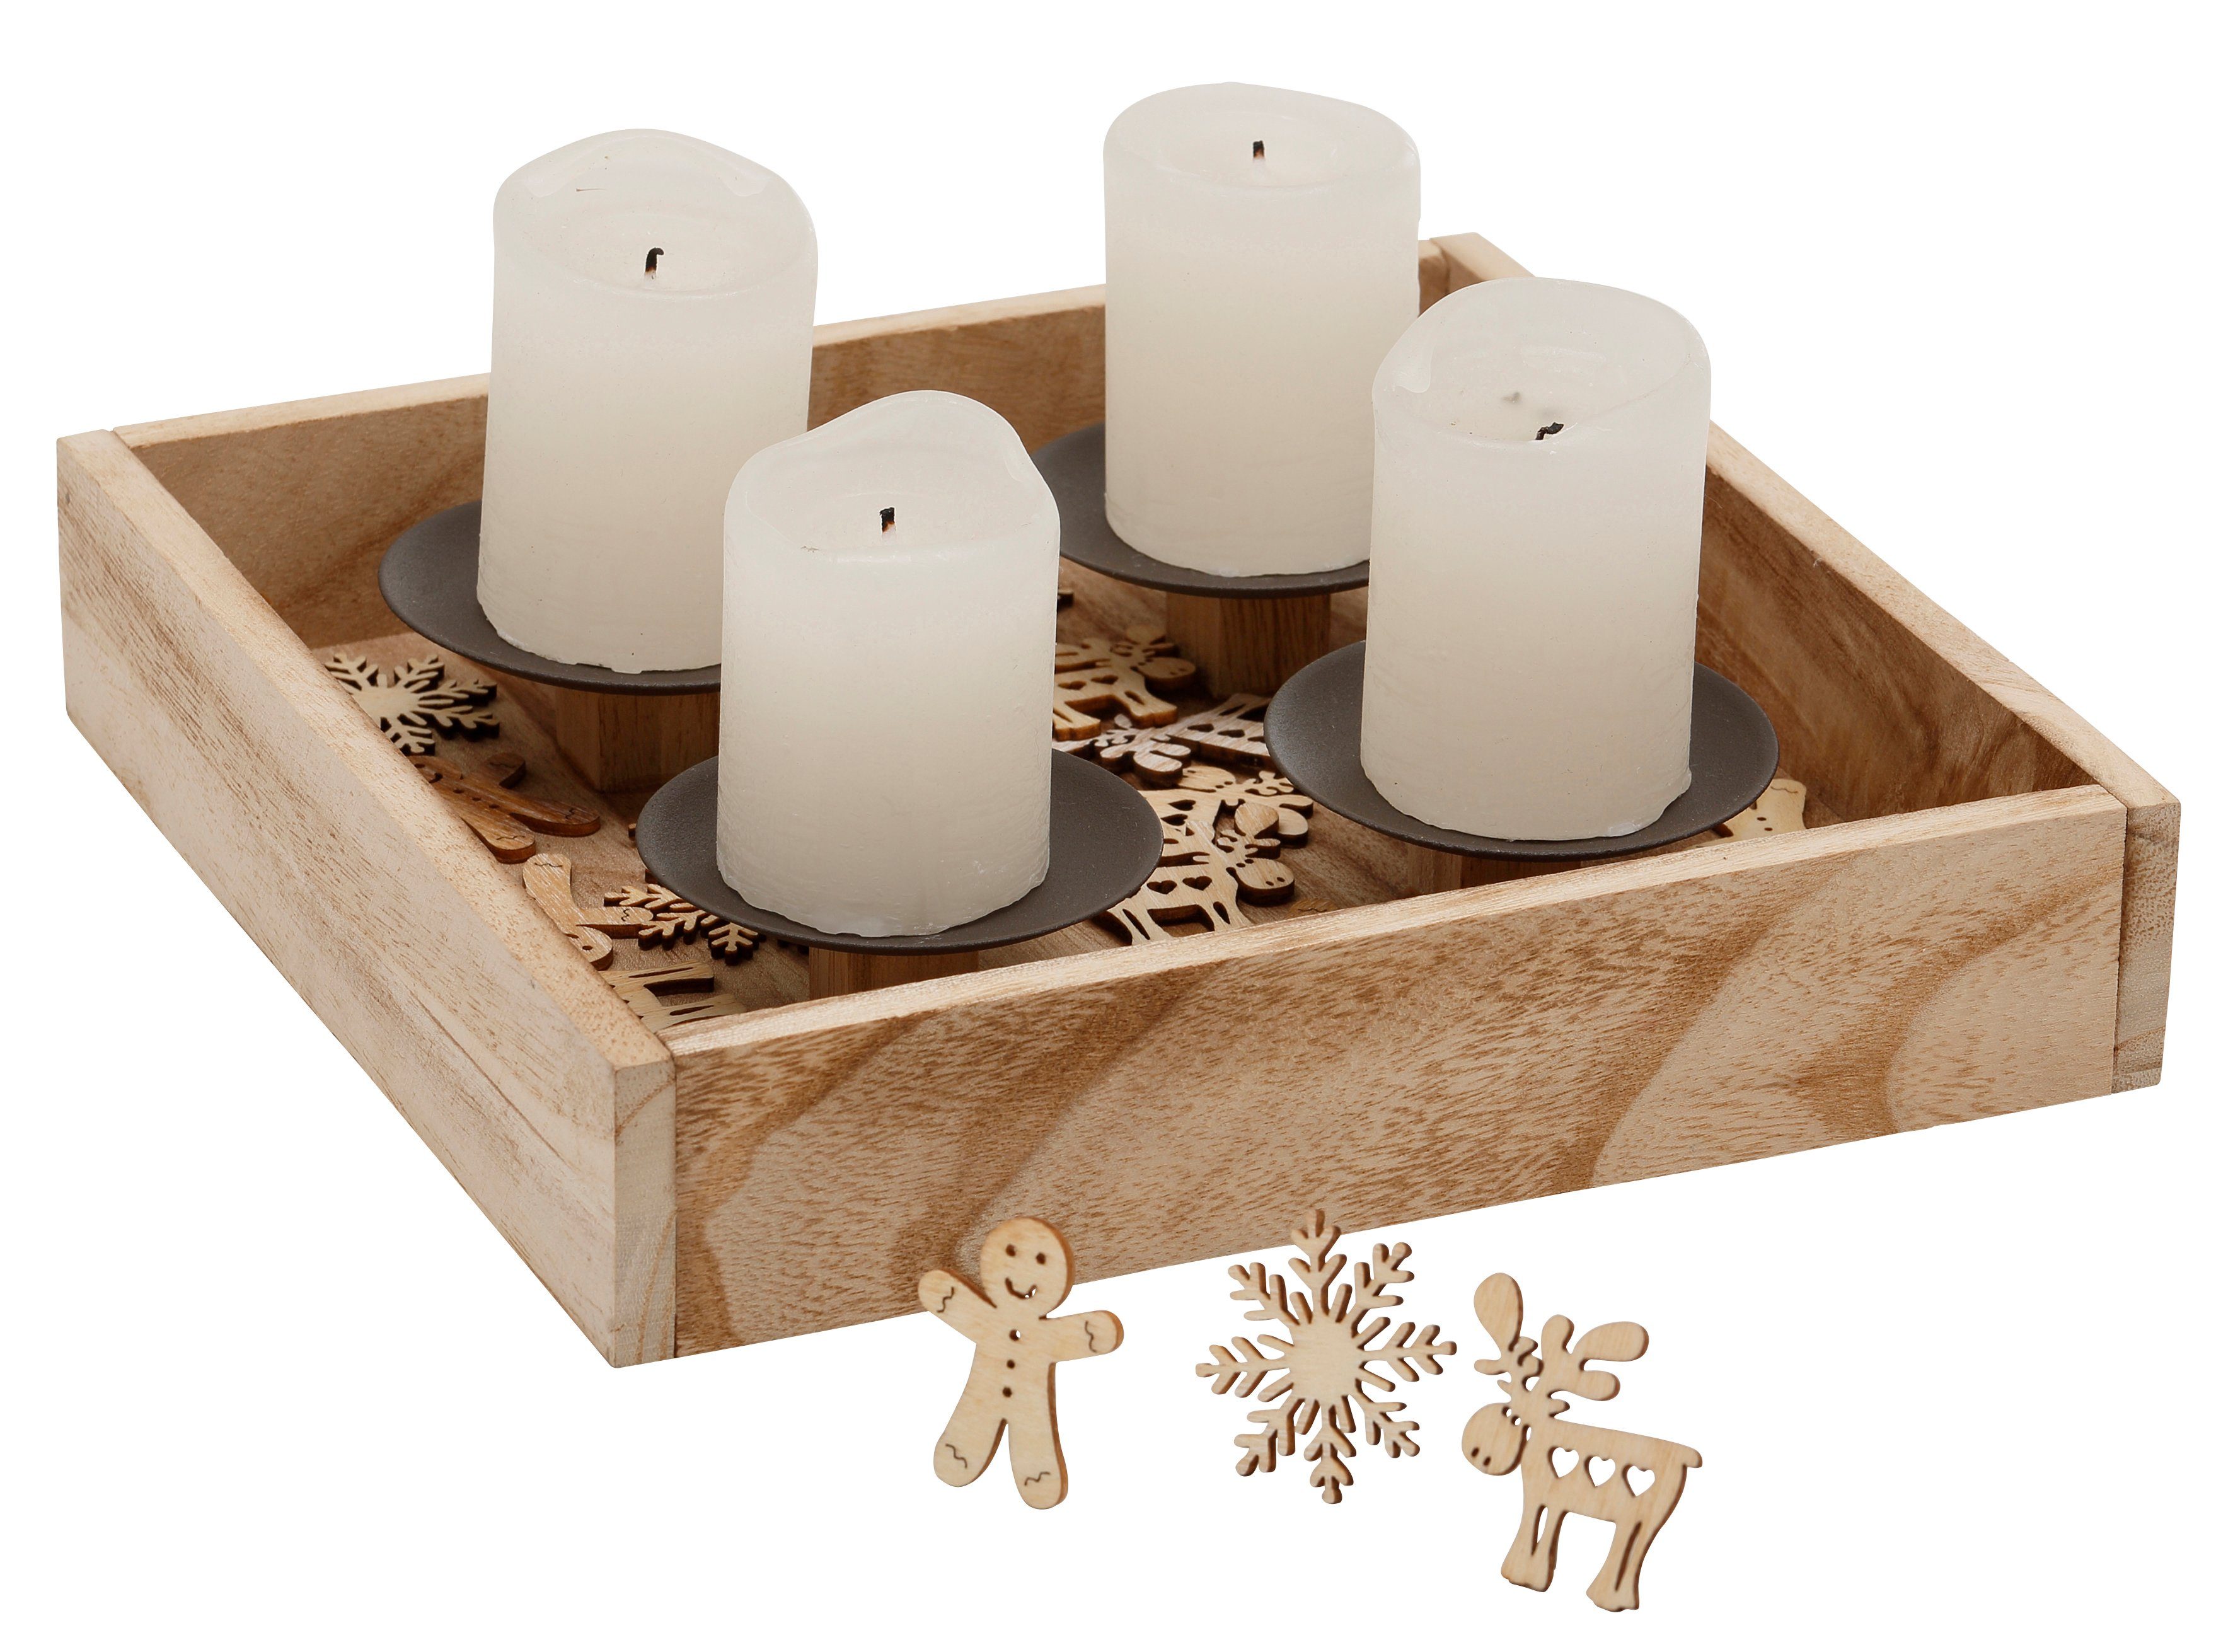 4 Adventsleuchter Metall, St), Weihnachtsdeko cm 25x25 (1 24 mit aus Streudekofiguren, mit Kerzenhaltern Ennsling Kerzenhalter und Home affaire Tablett Holz